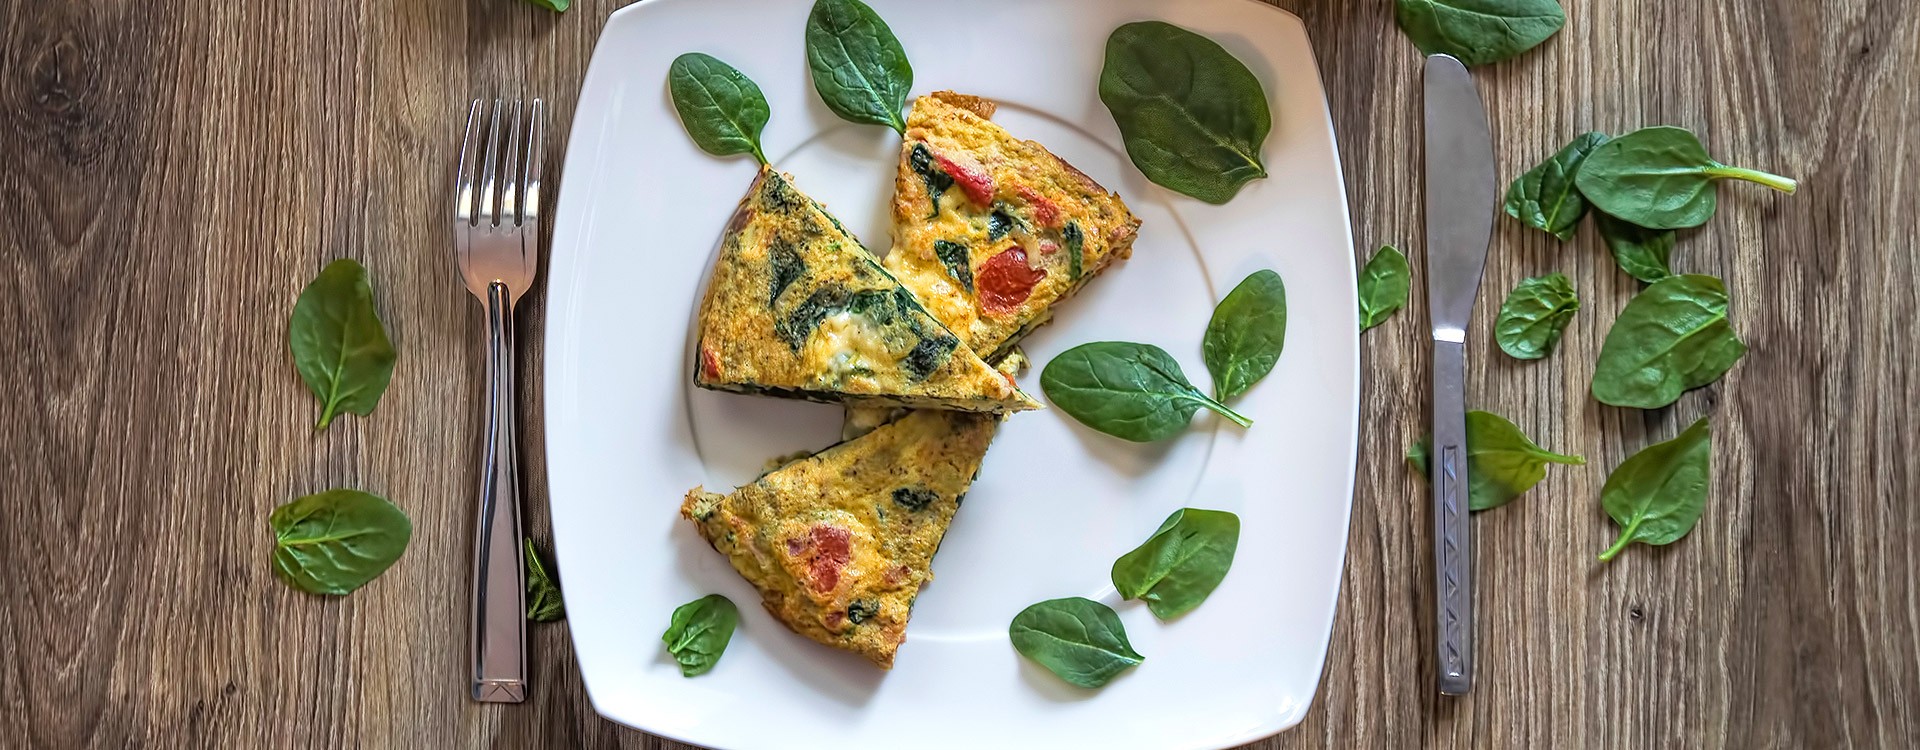 Omlet ze szpinakiem i serem – pomysł na śniadanie Wielkanocne